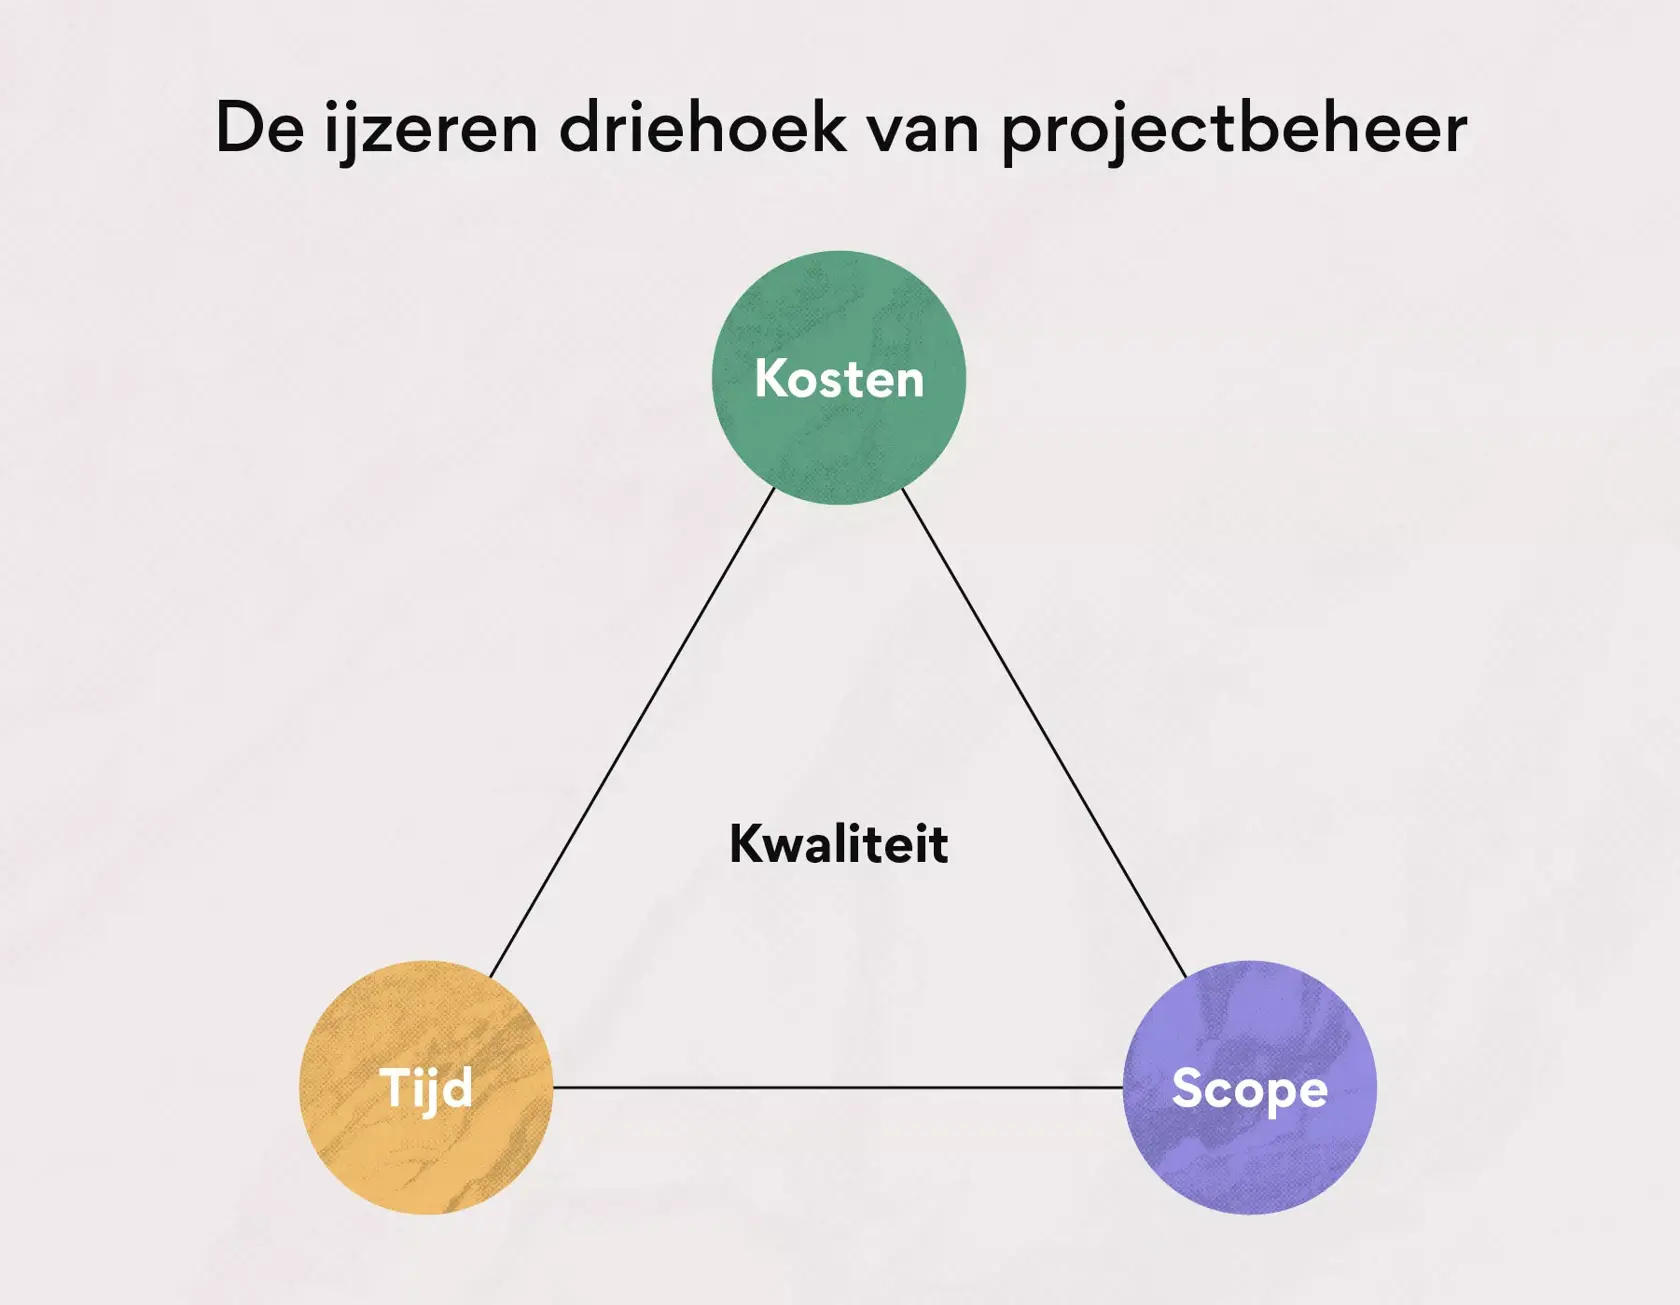 De ijzeren driehoek van projectbeheer